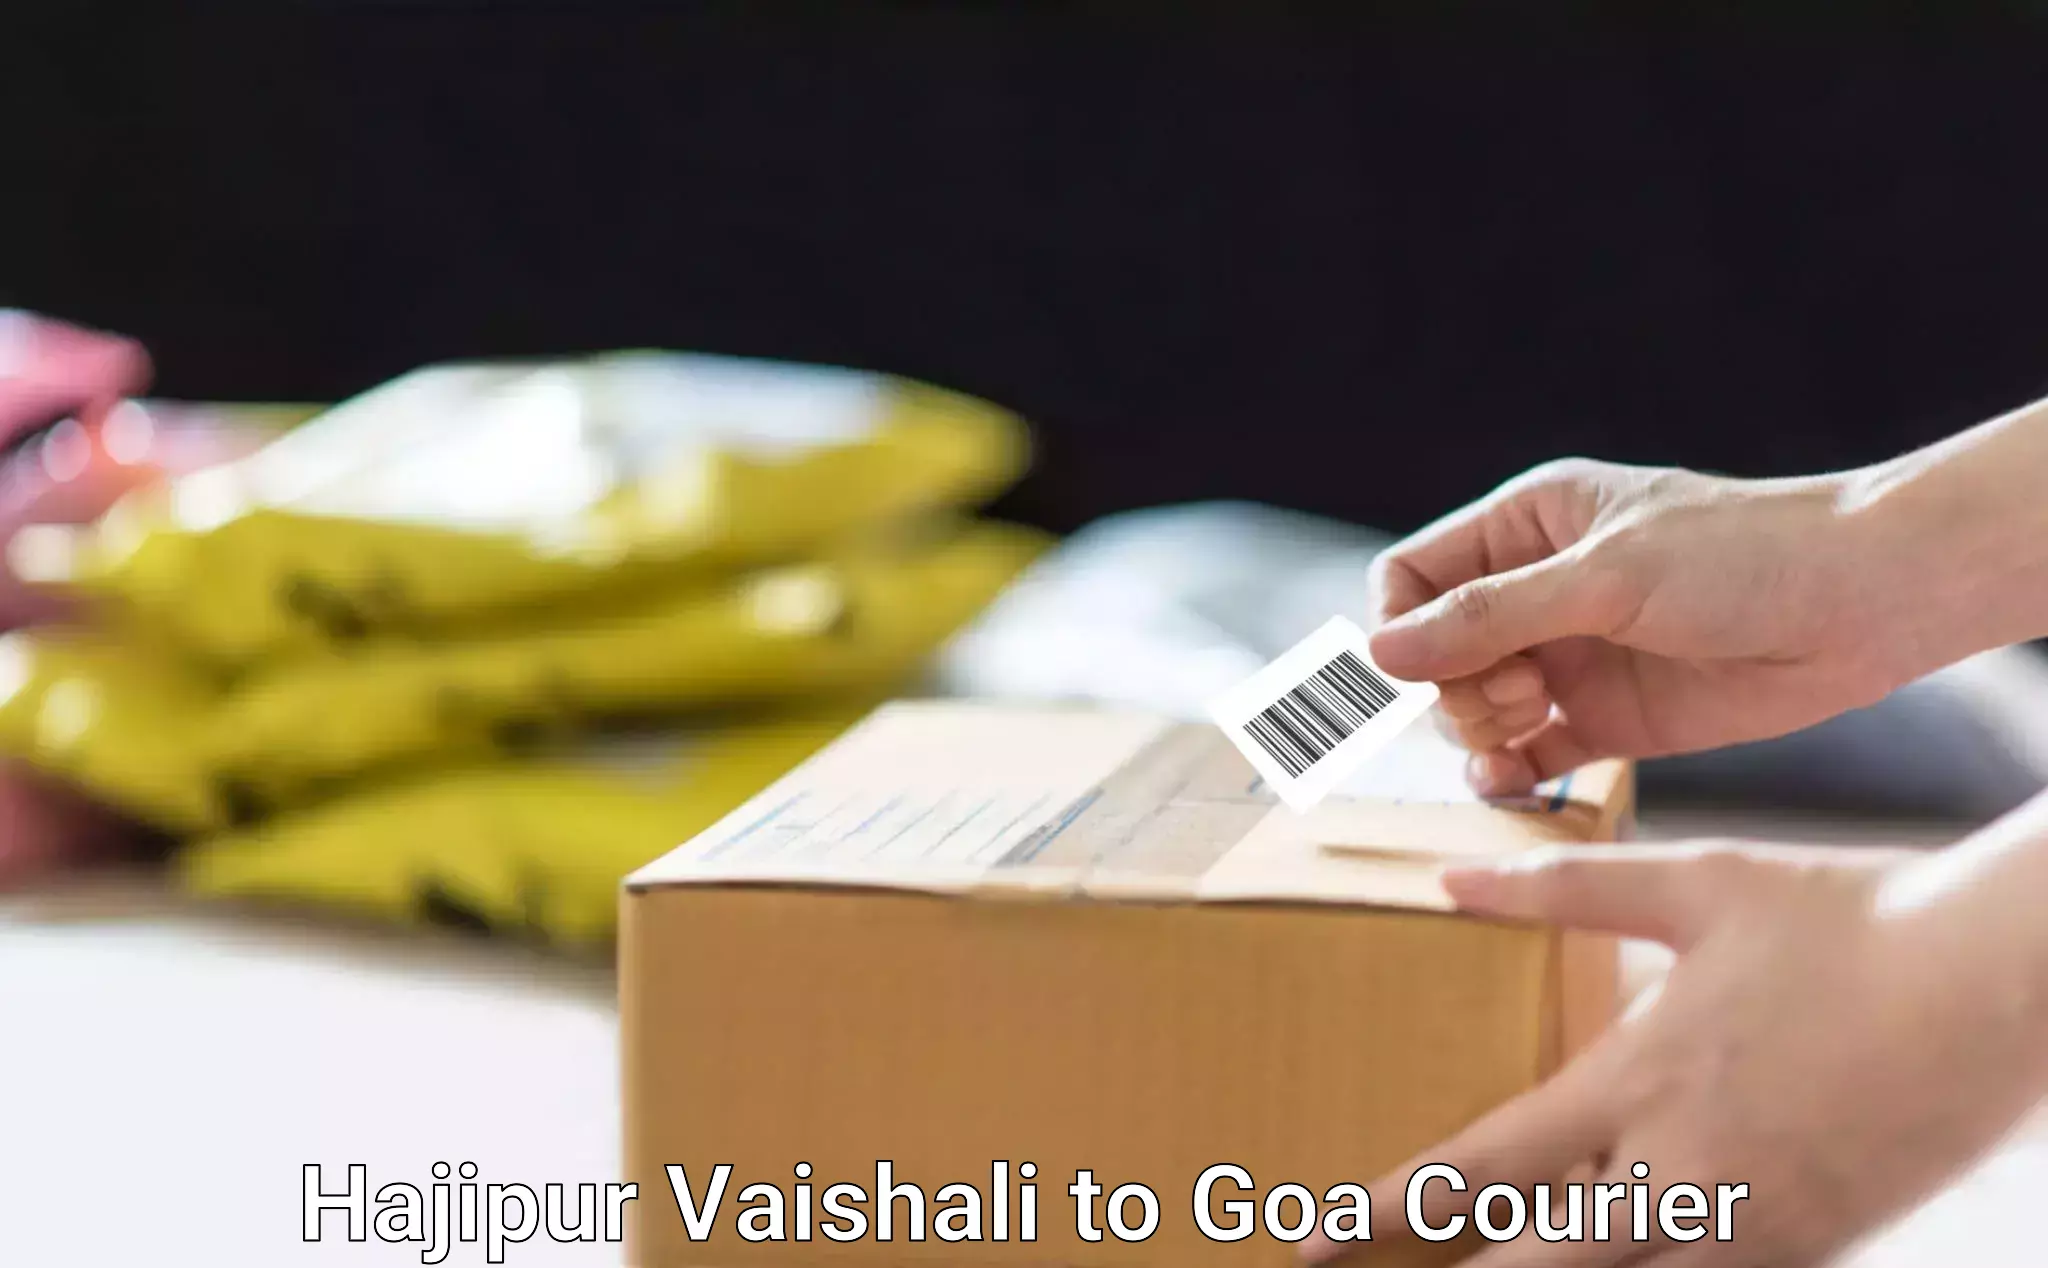 Specialized moving company Hajipur Vaishali to Goa